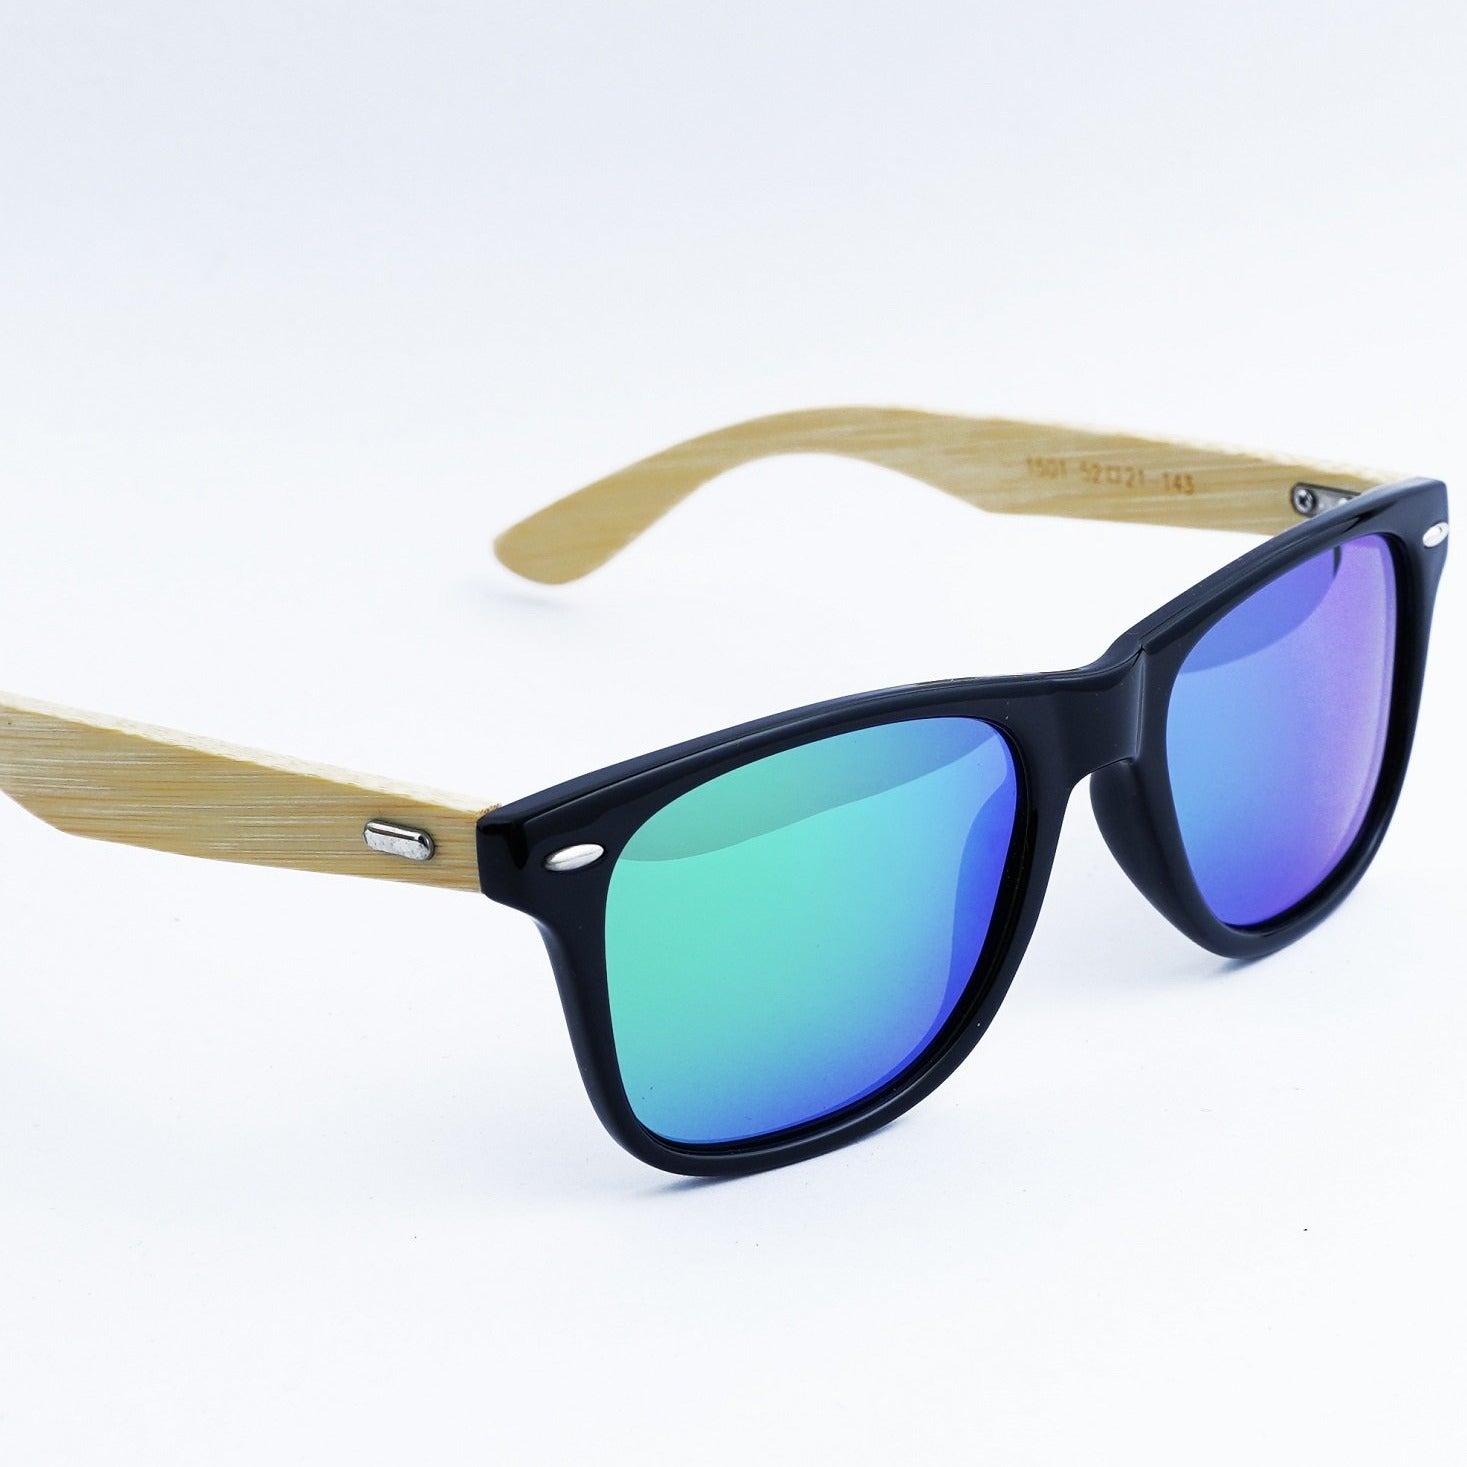 Sierra - Wooden Sunglasses for Men and Women